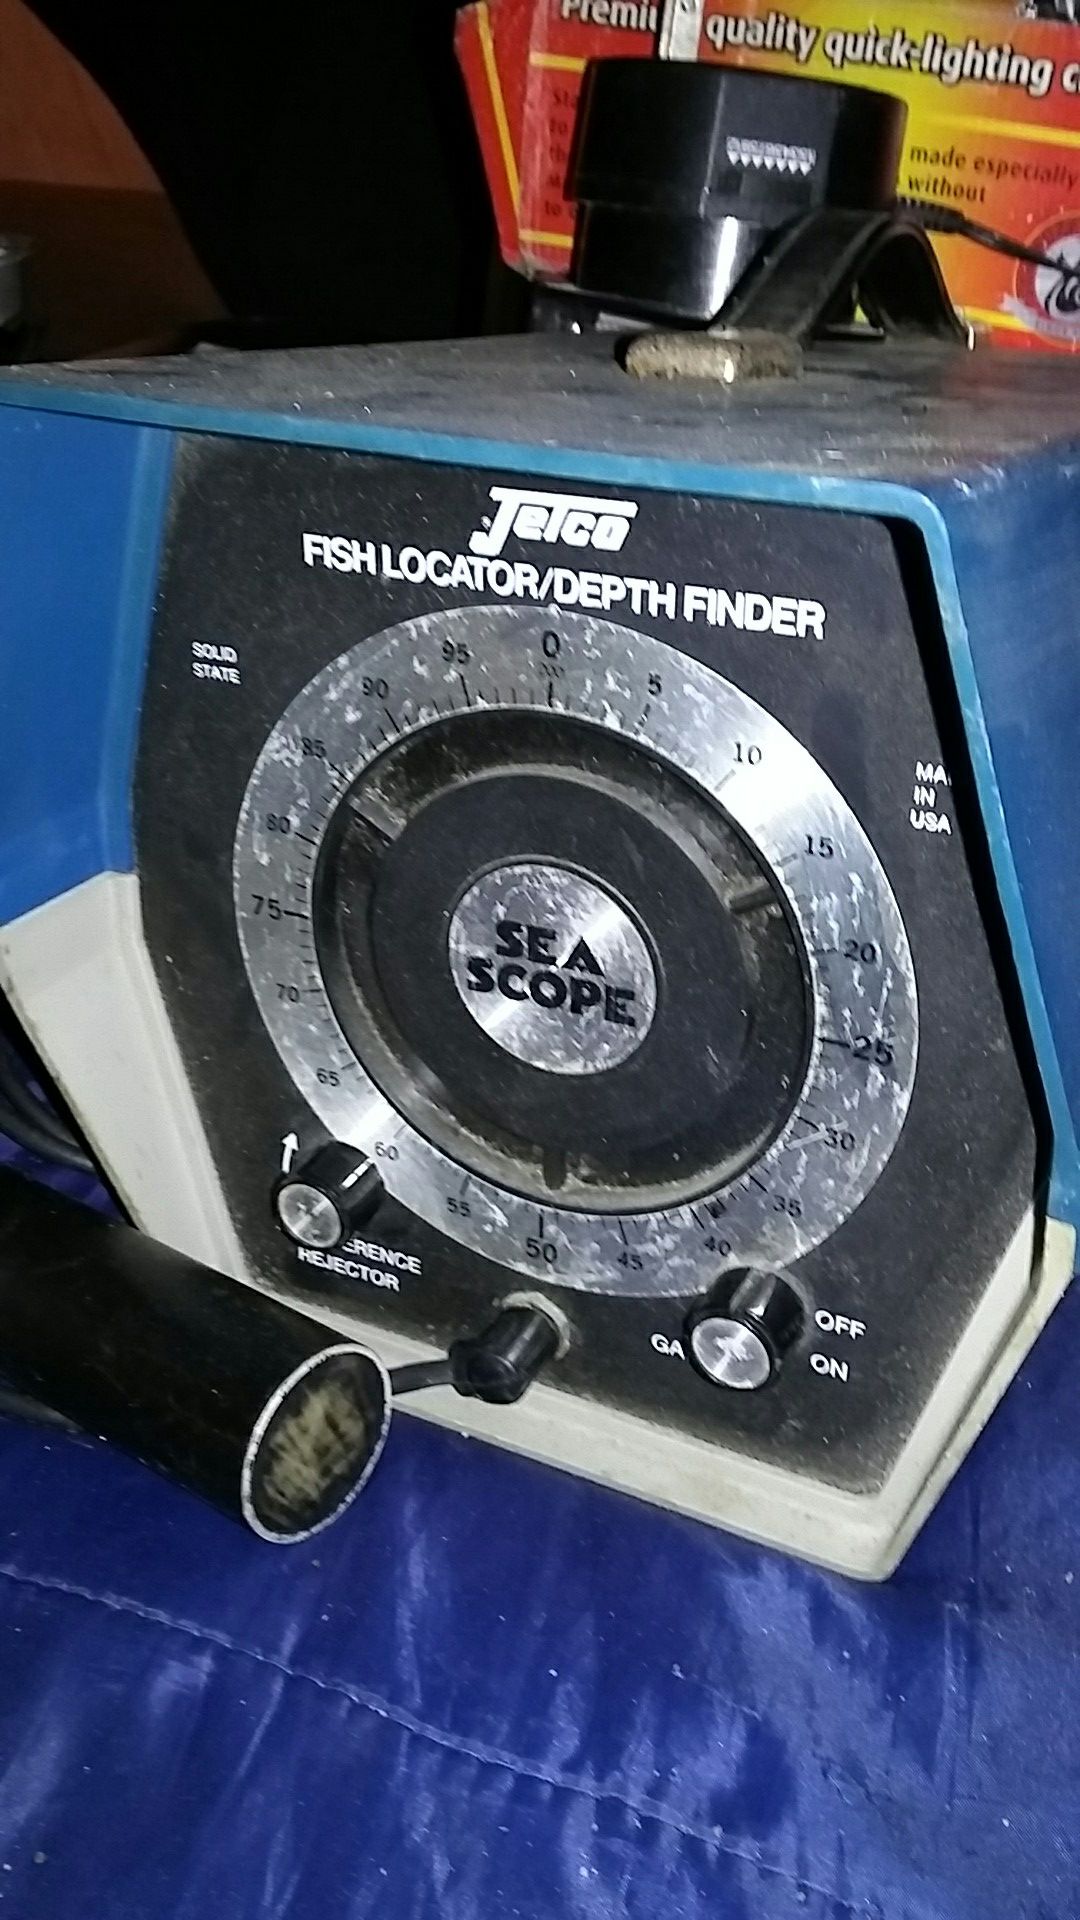 Jetco Fish Locator/Depth Finder